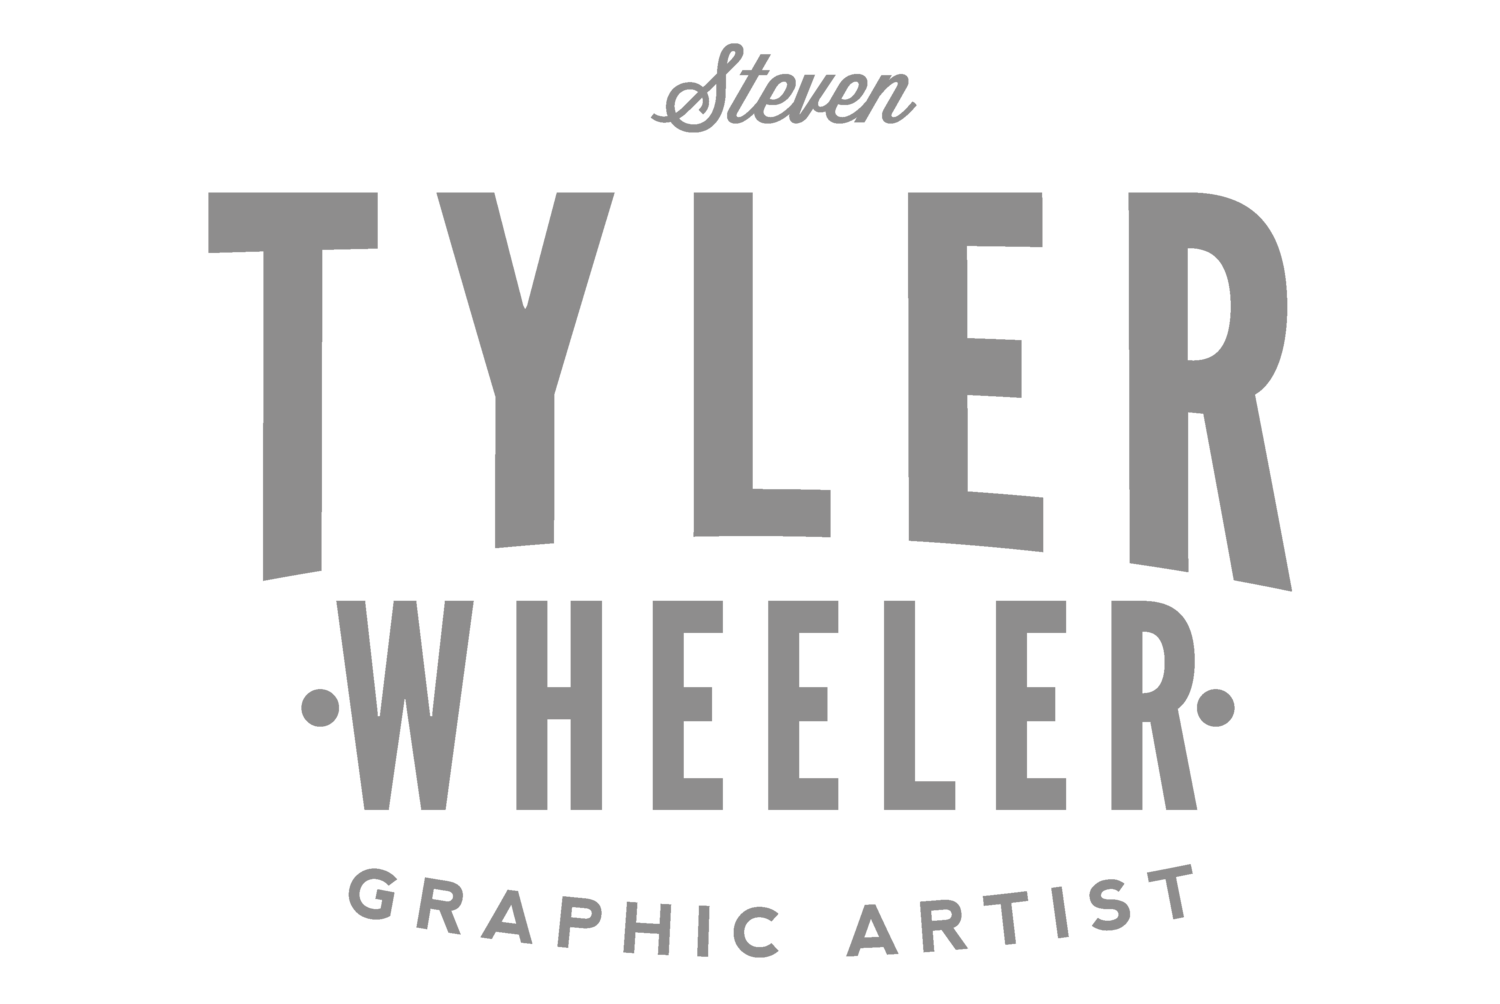 Steven Tyler Wheeler